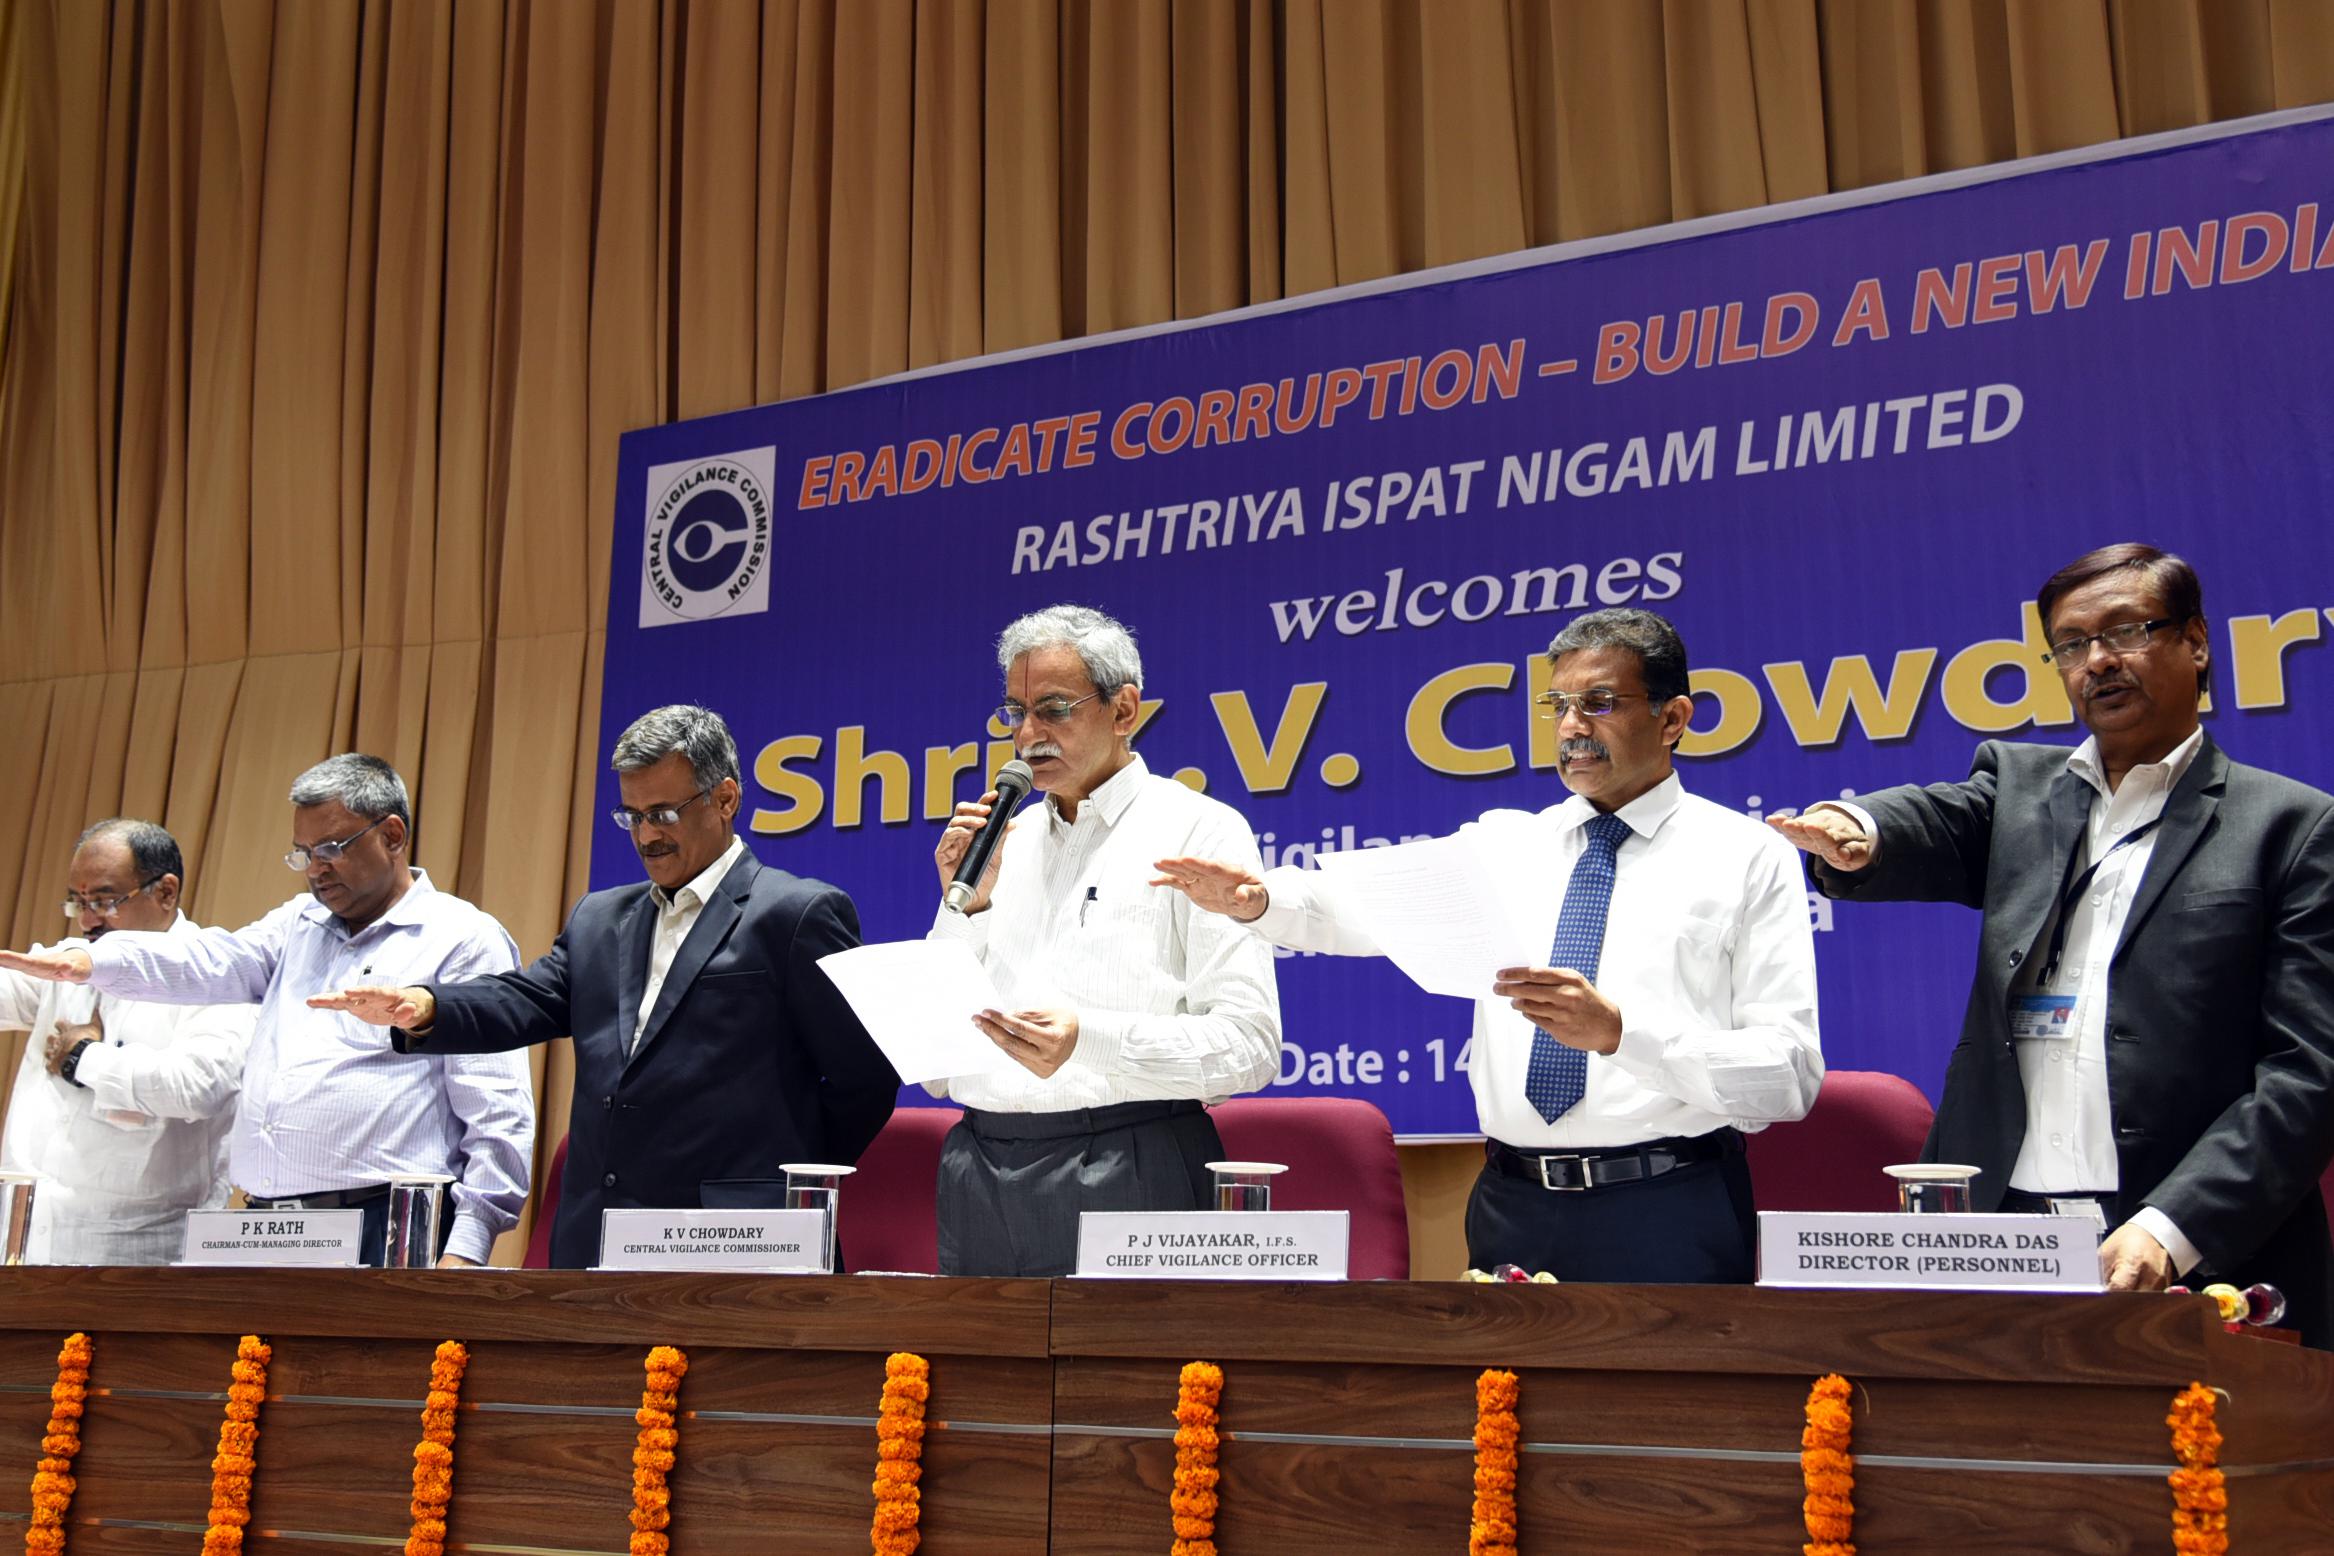 Organizations lack Integrity will perish:  Sri KV Chowdary, CVC